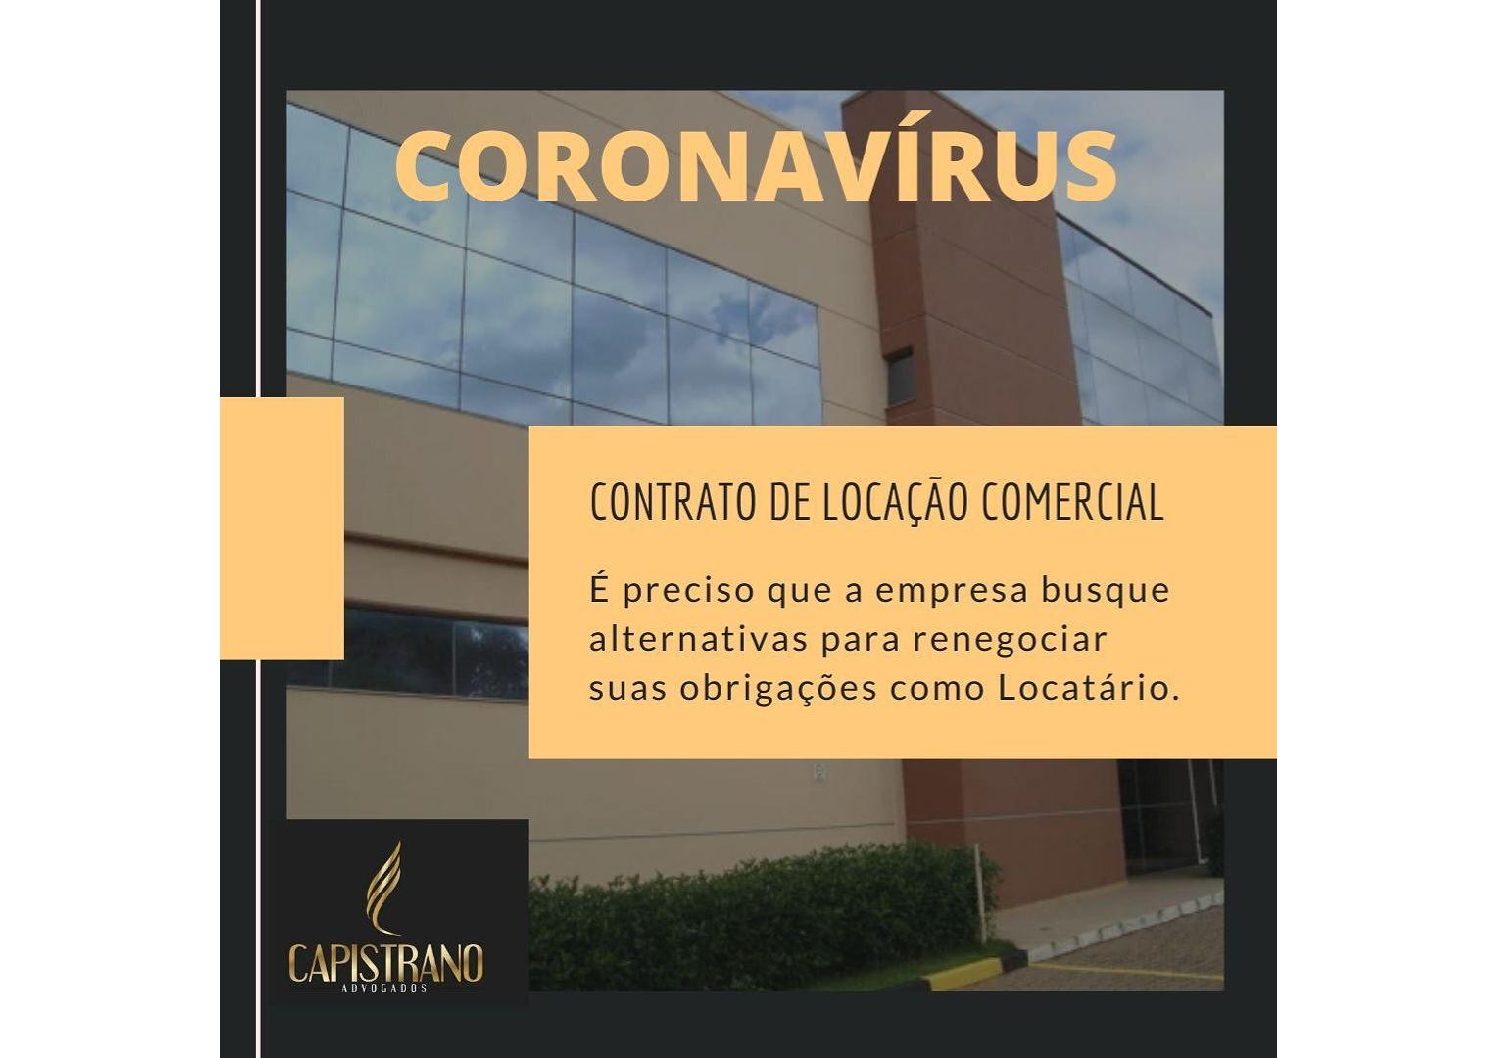 CONTRATO DE LOCAÇÃO COMERCIAL E O CORONAVÍRUS